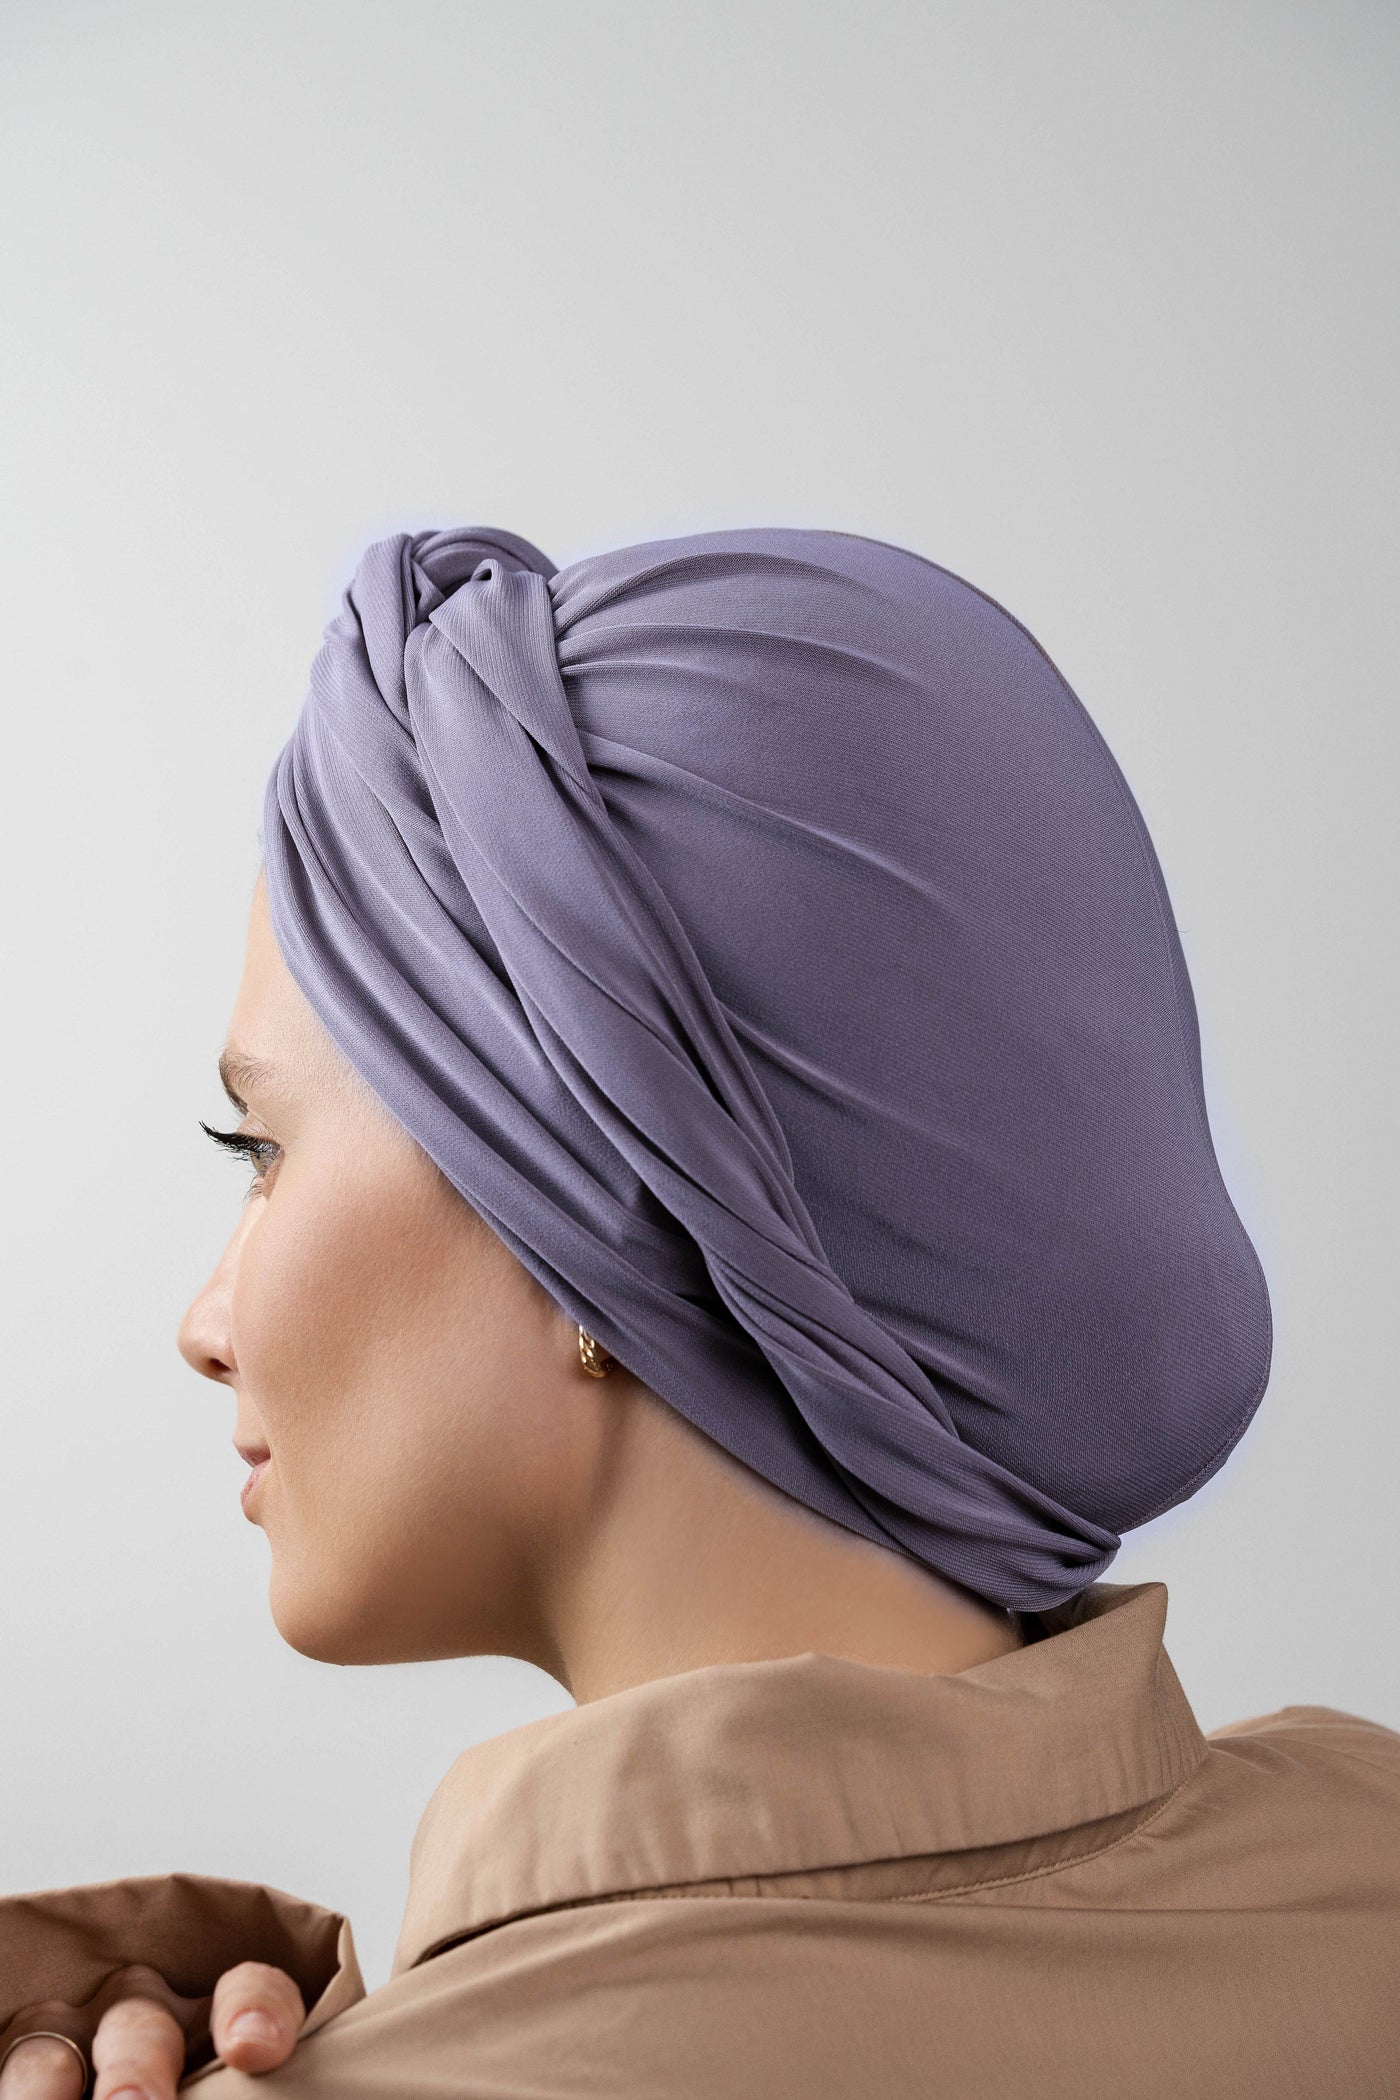 Multifunctional headwrap - purple